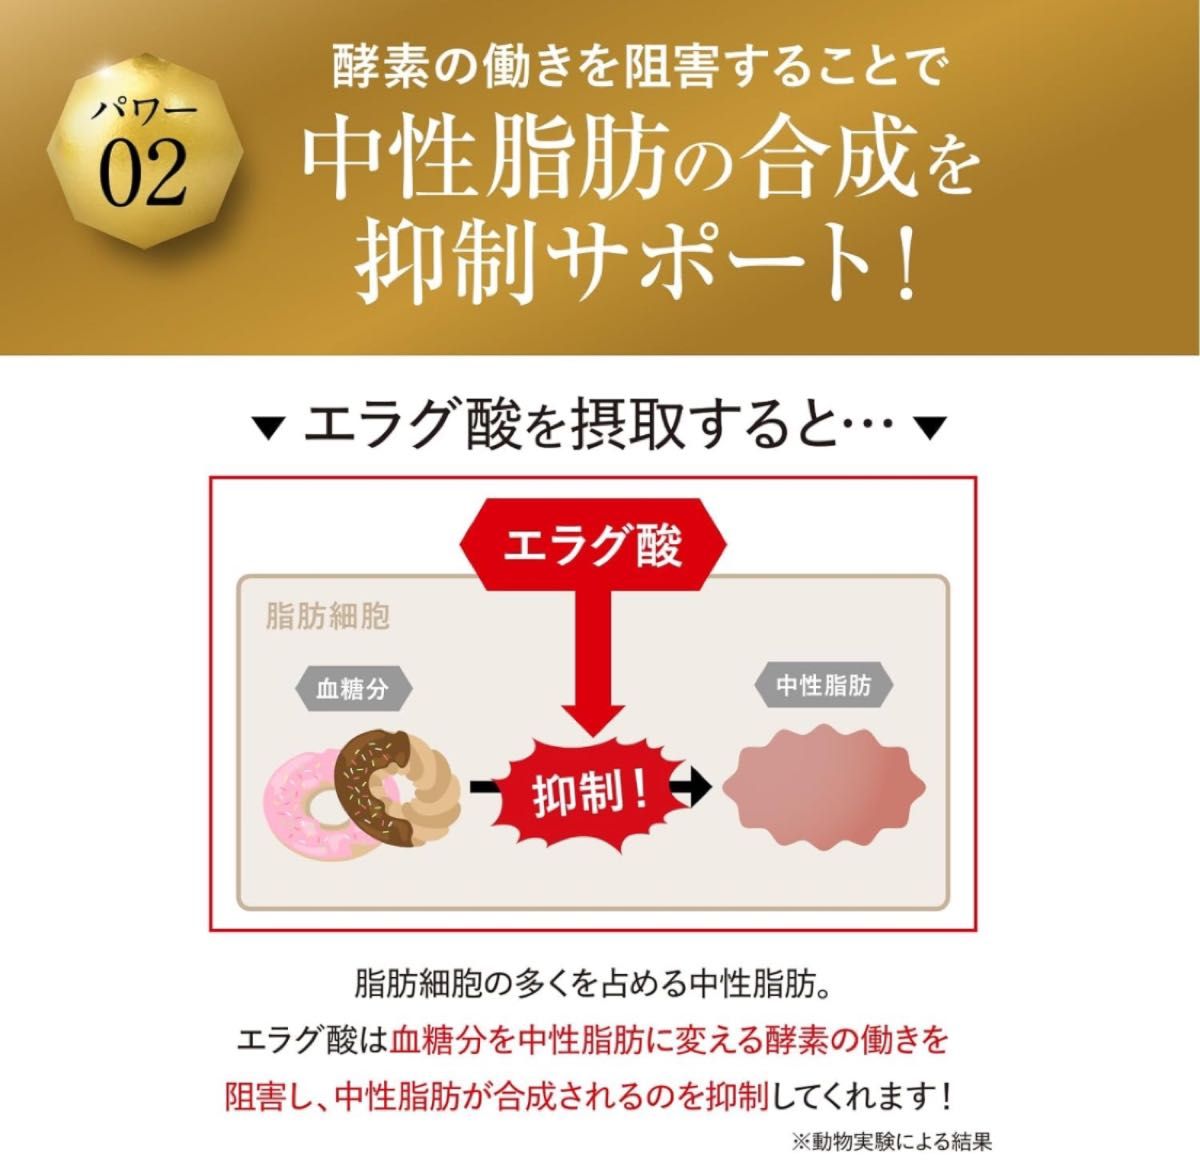 キラーバーナー Ⅱ ダイエットサプリ 倖田來未 プロデュース 1袋45粒 KILLER BURNER 機能性表示食品 サプリメント